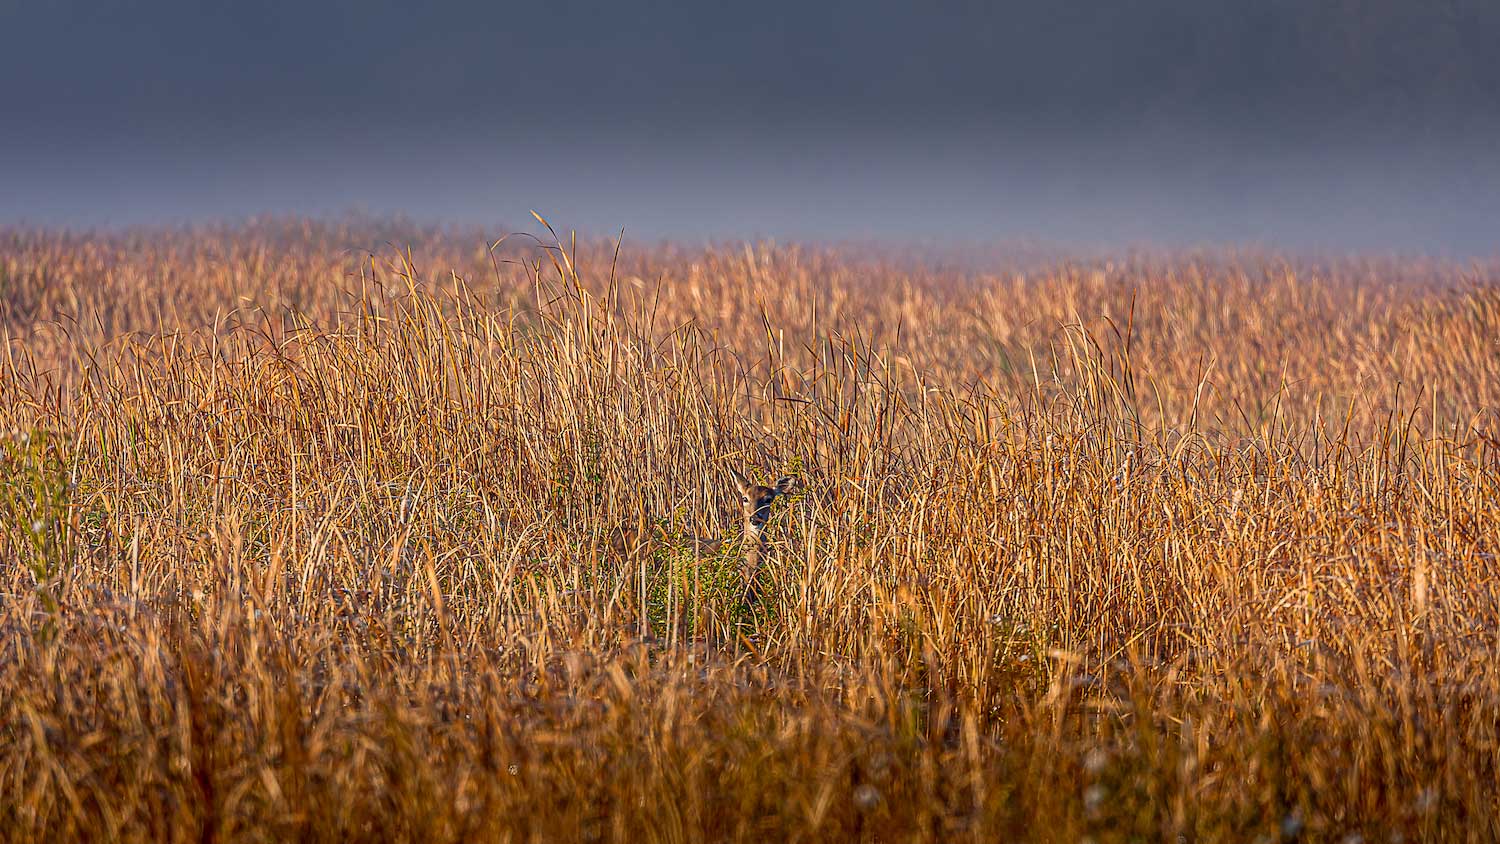 A deer hiding in tall prairie grasses.